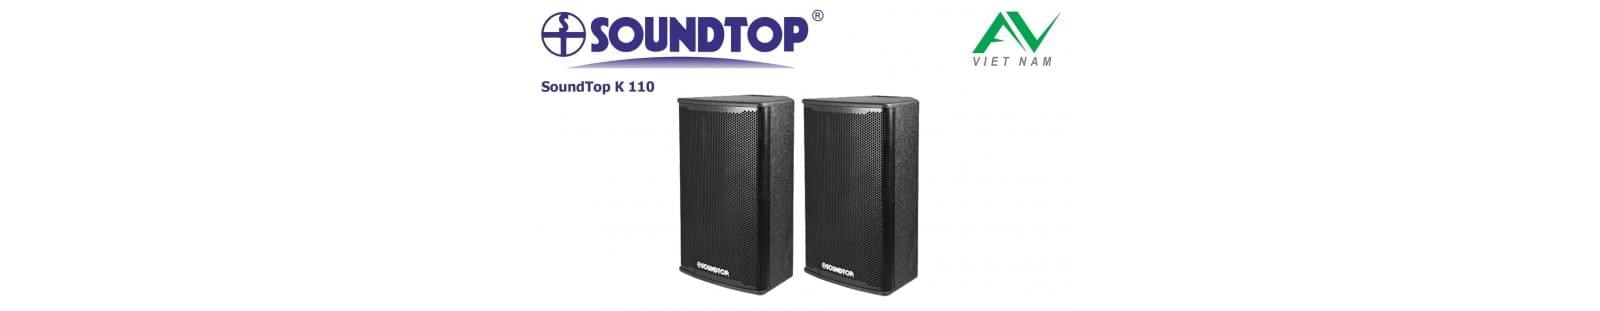 SoundTop K-110